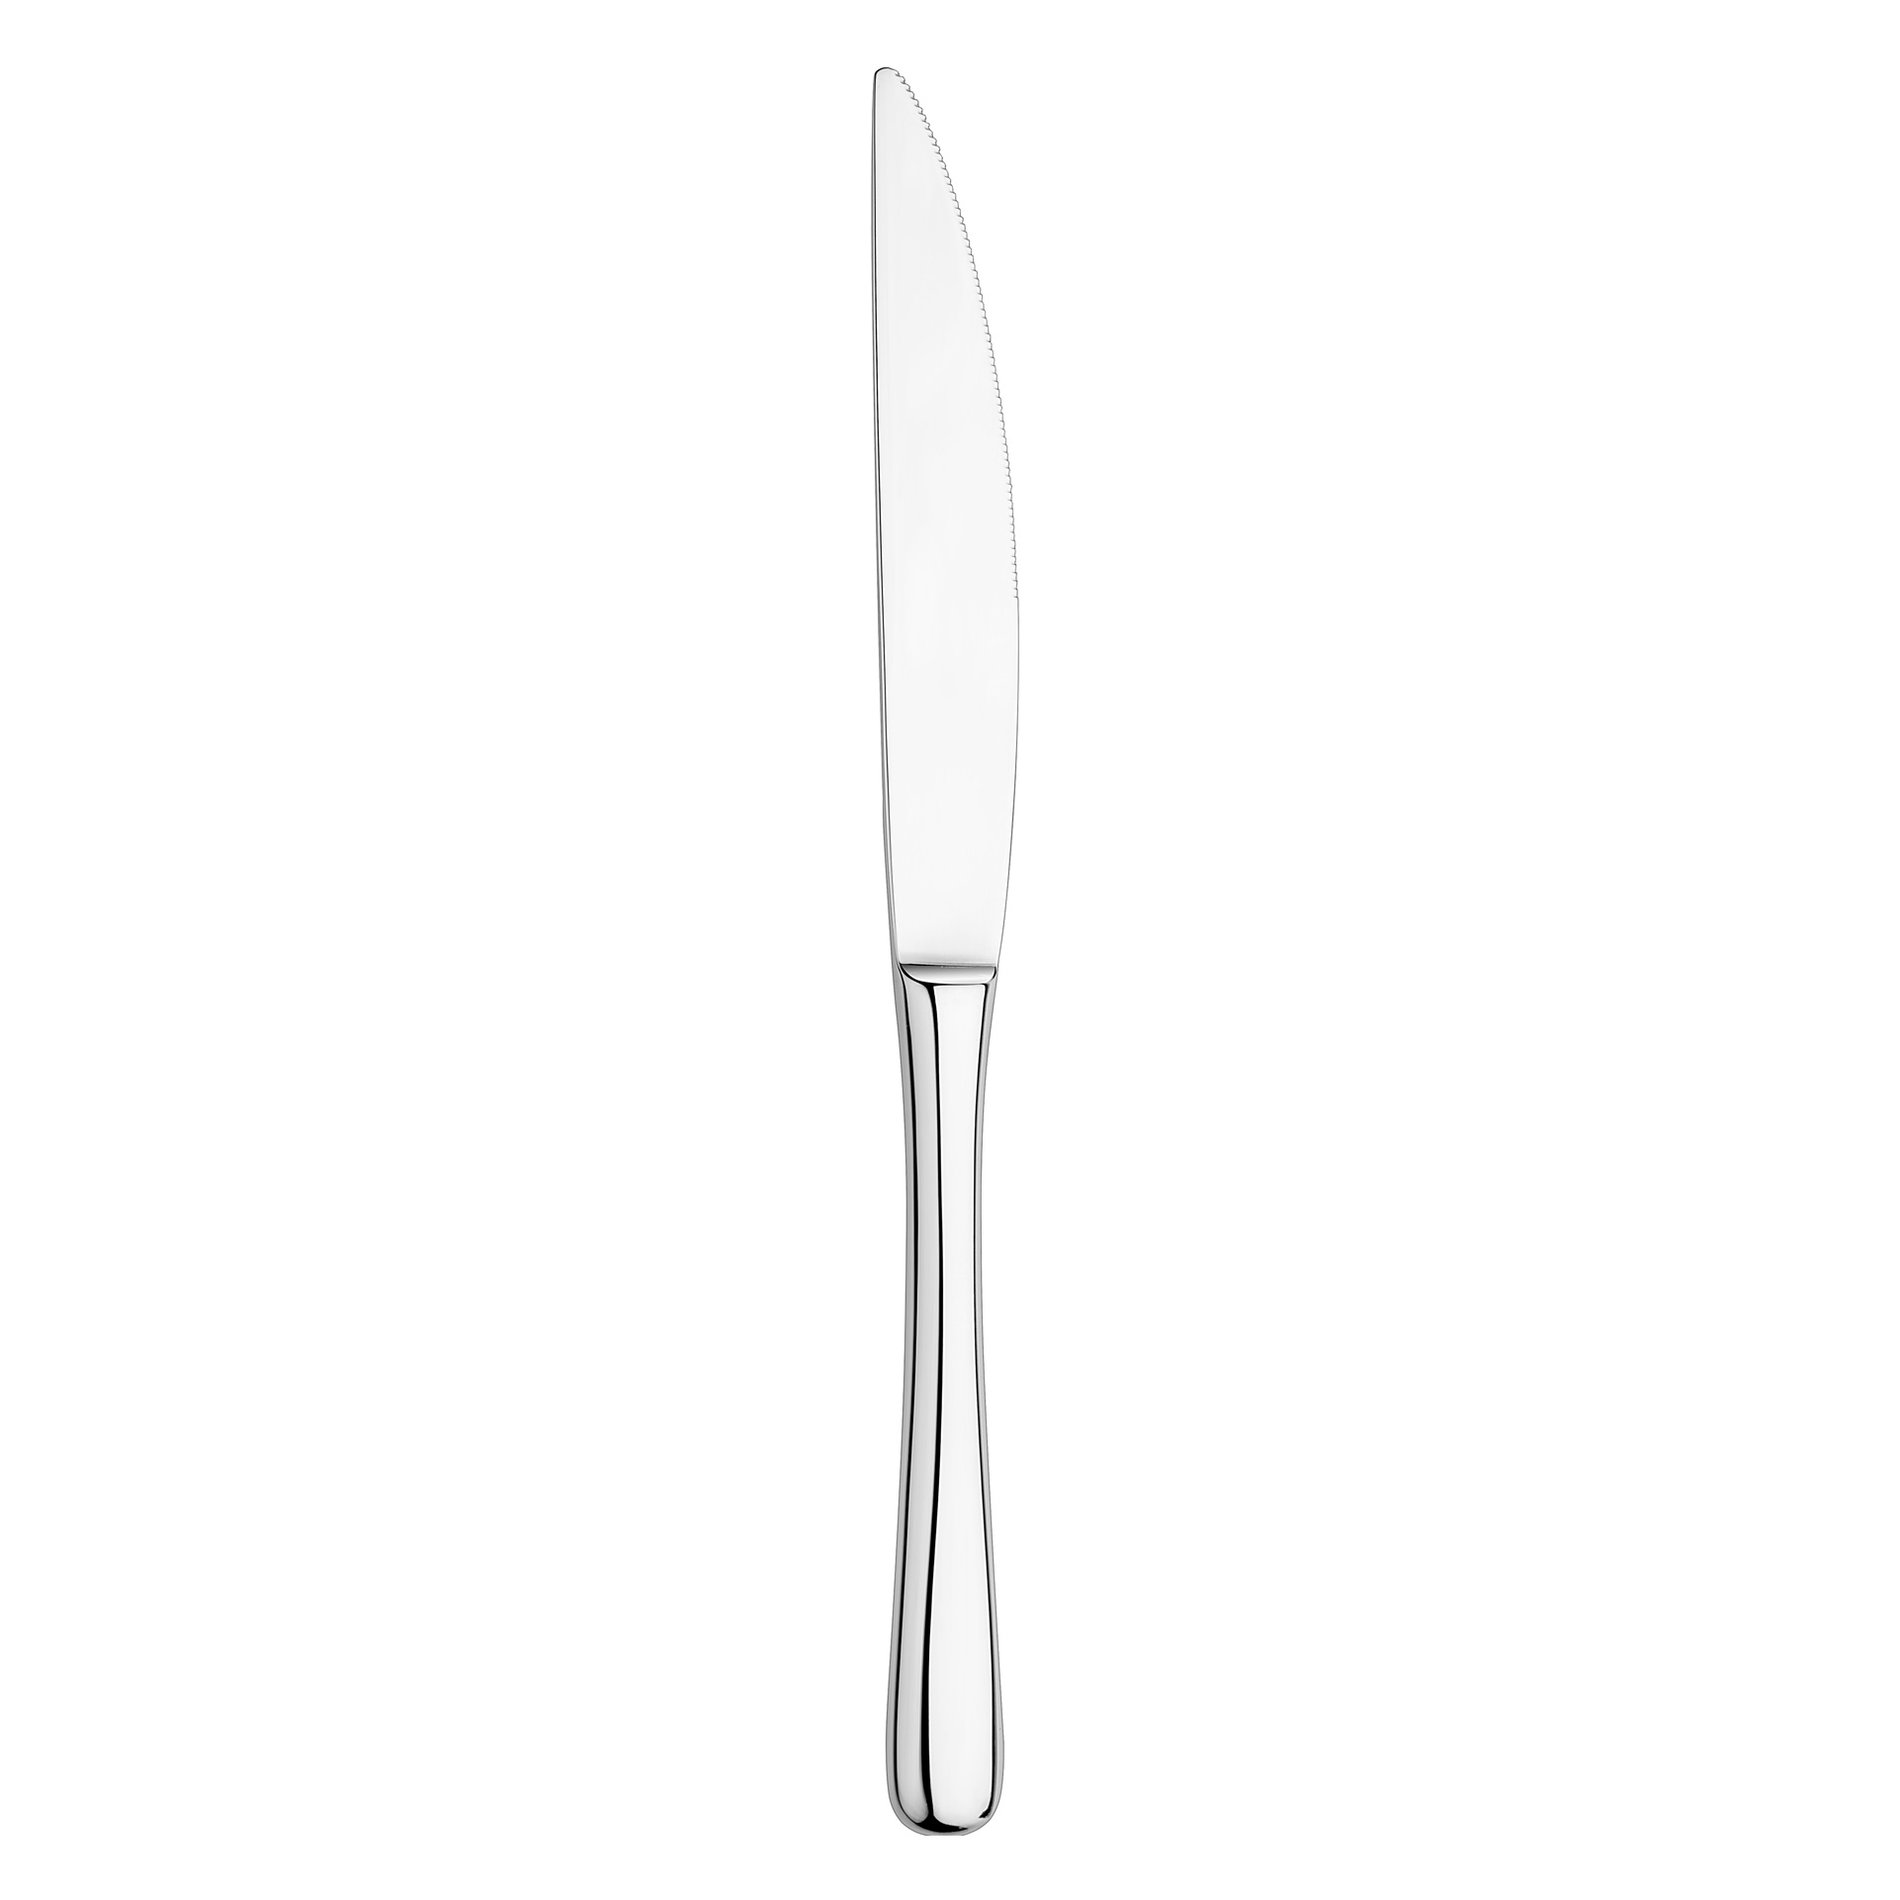 Předkrmový nůž LUI - VERLO (nový)